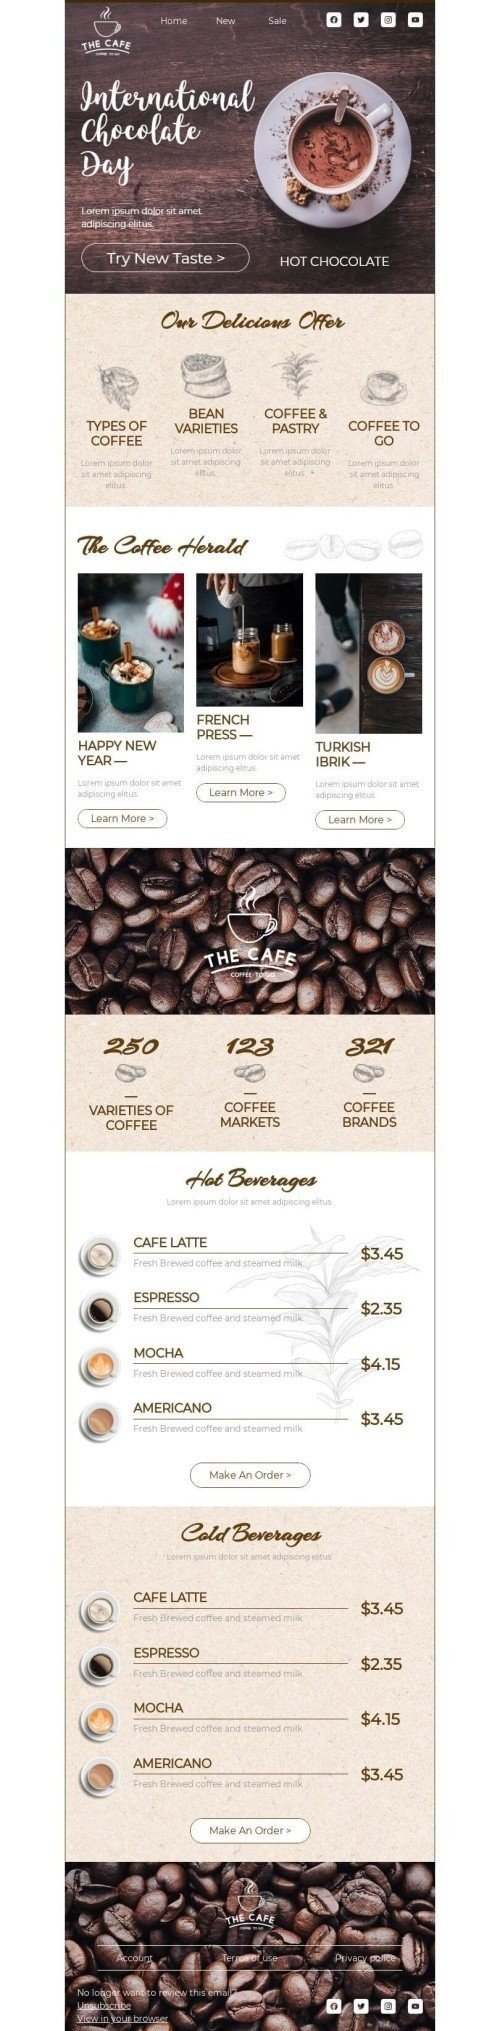 Der internationale Tag der Schokolade E-Mail-Vorlage «Probieren Sie einen neuen Geschmack» für Getränke-Branche mobile view